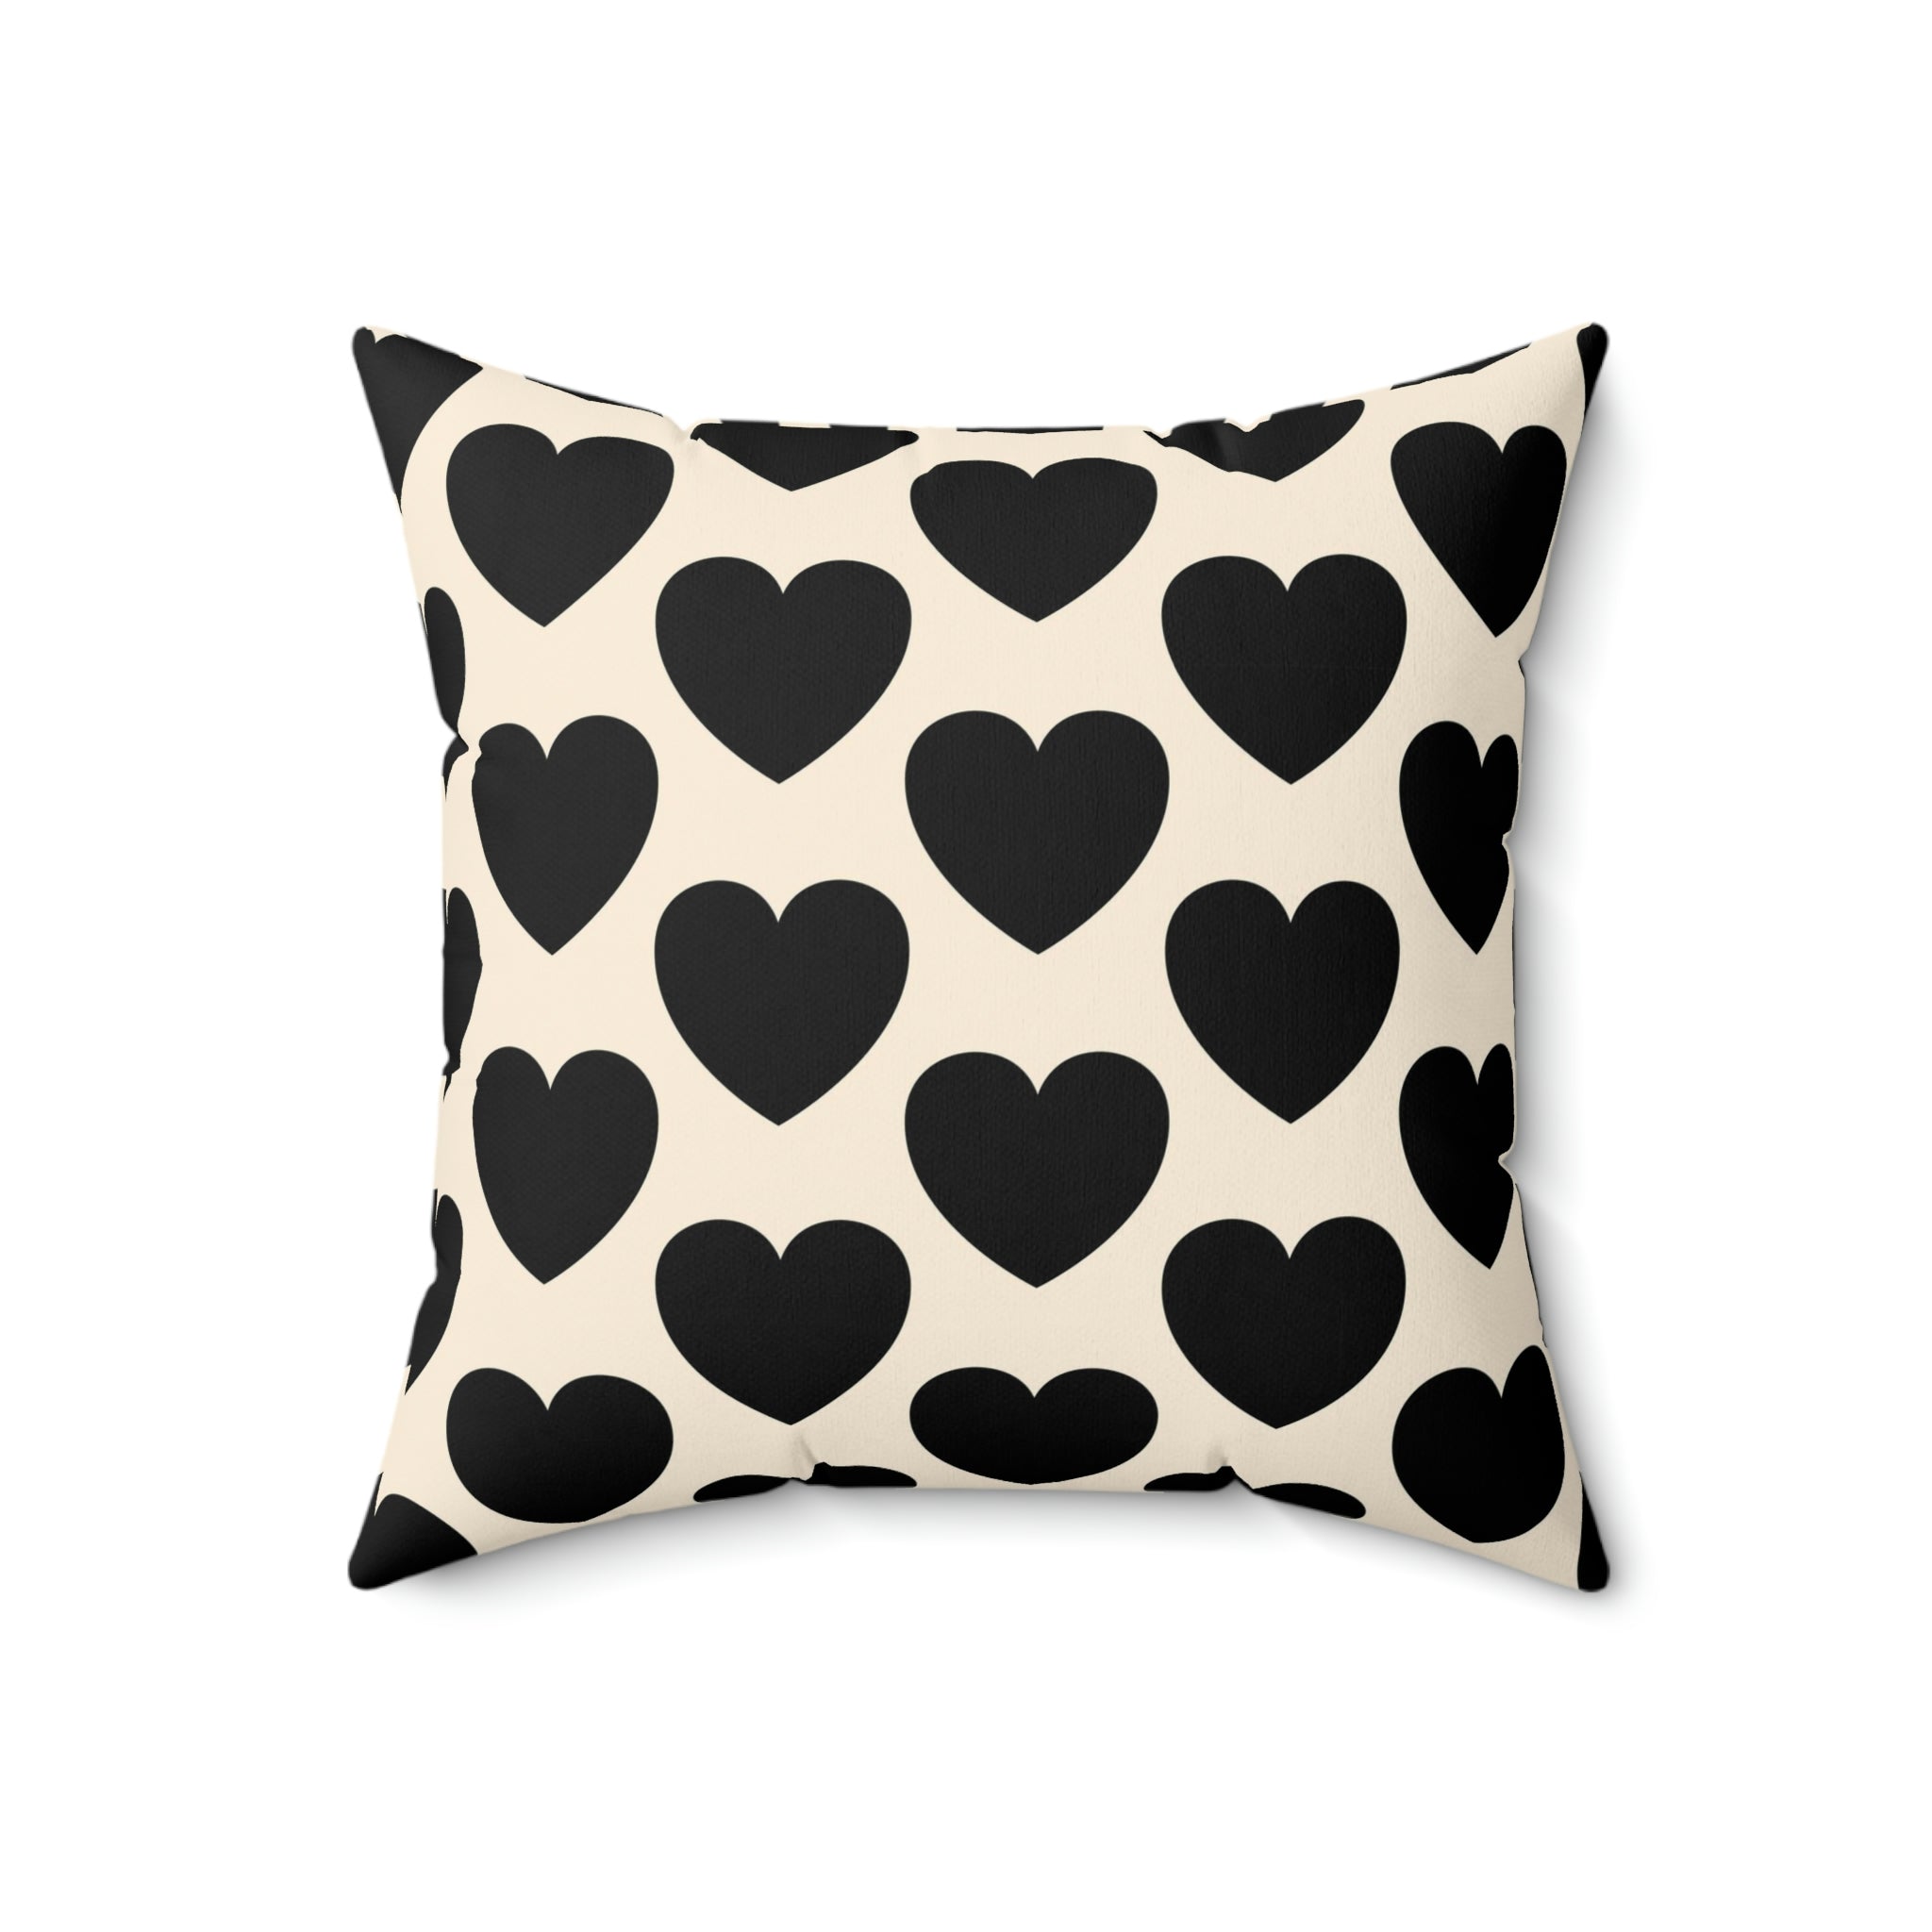 Love Spun Polyester Pillow Heart black pattern